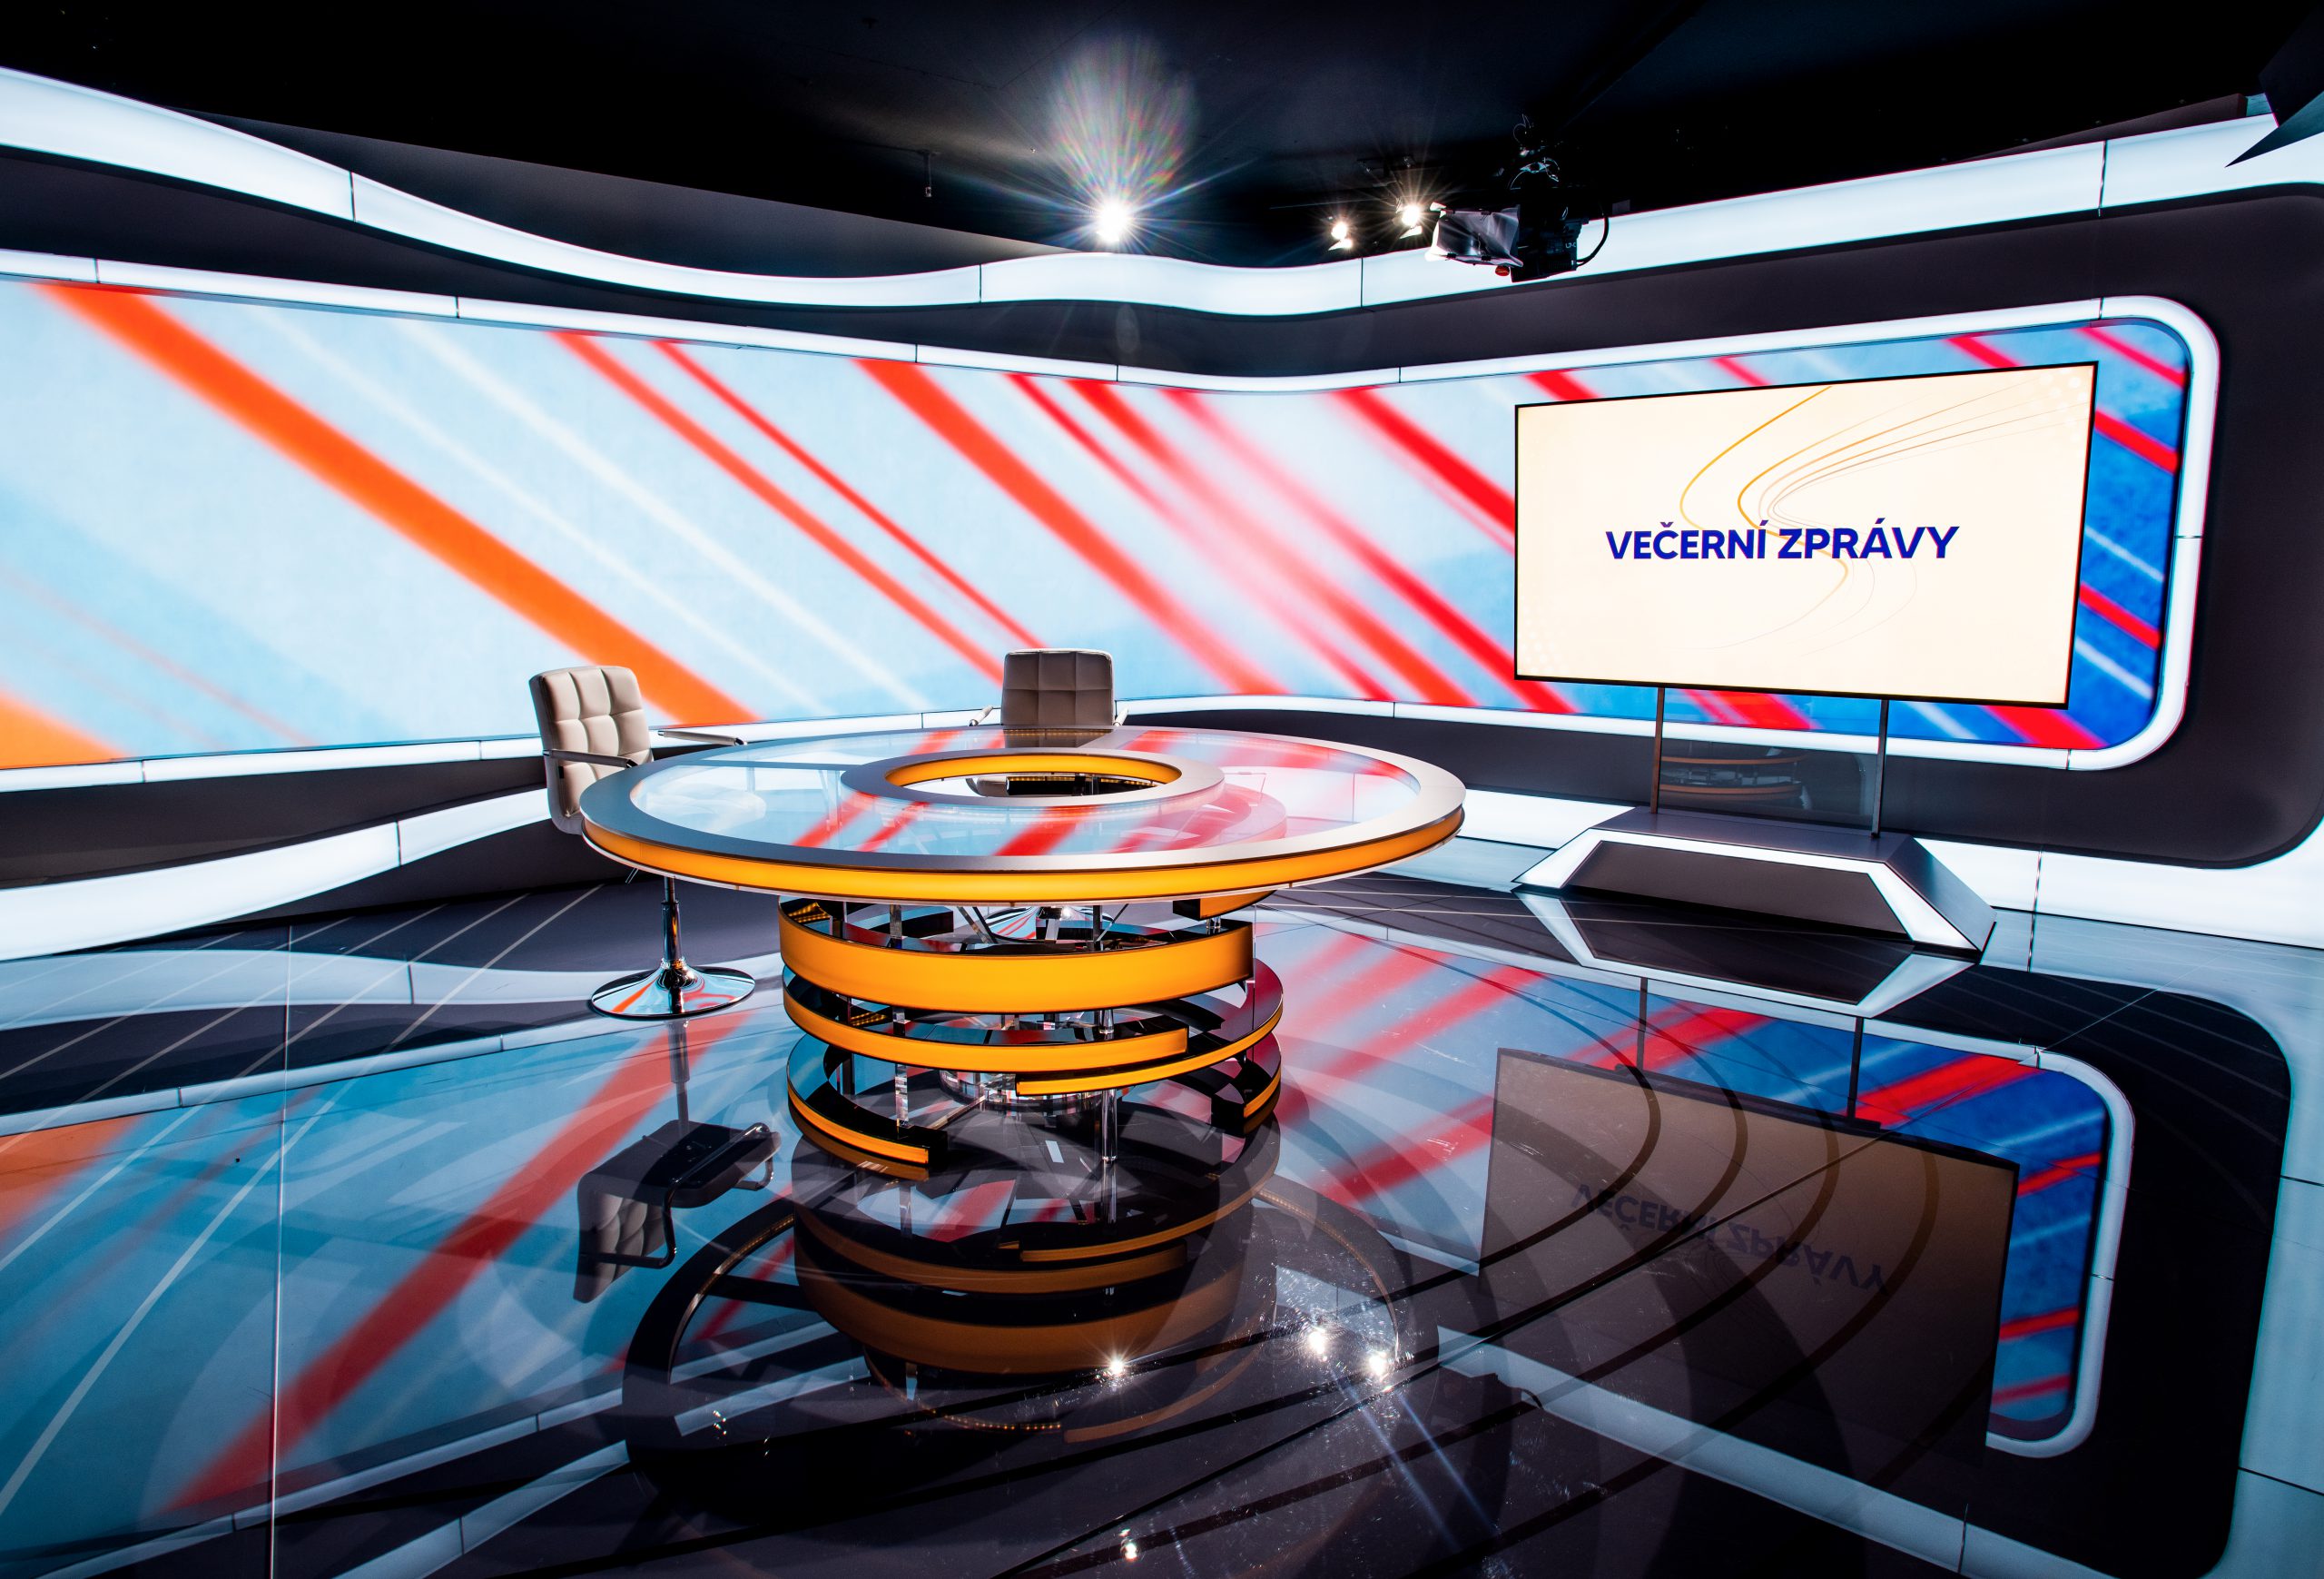 Televize Seznam má nové zpravodajské studio i grafickou a hudební výbavu Večerních zpráv